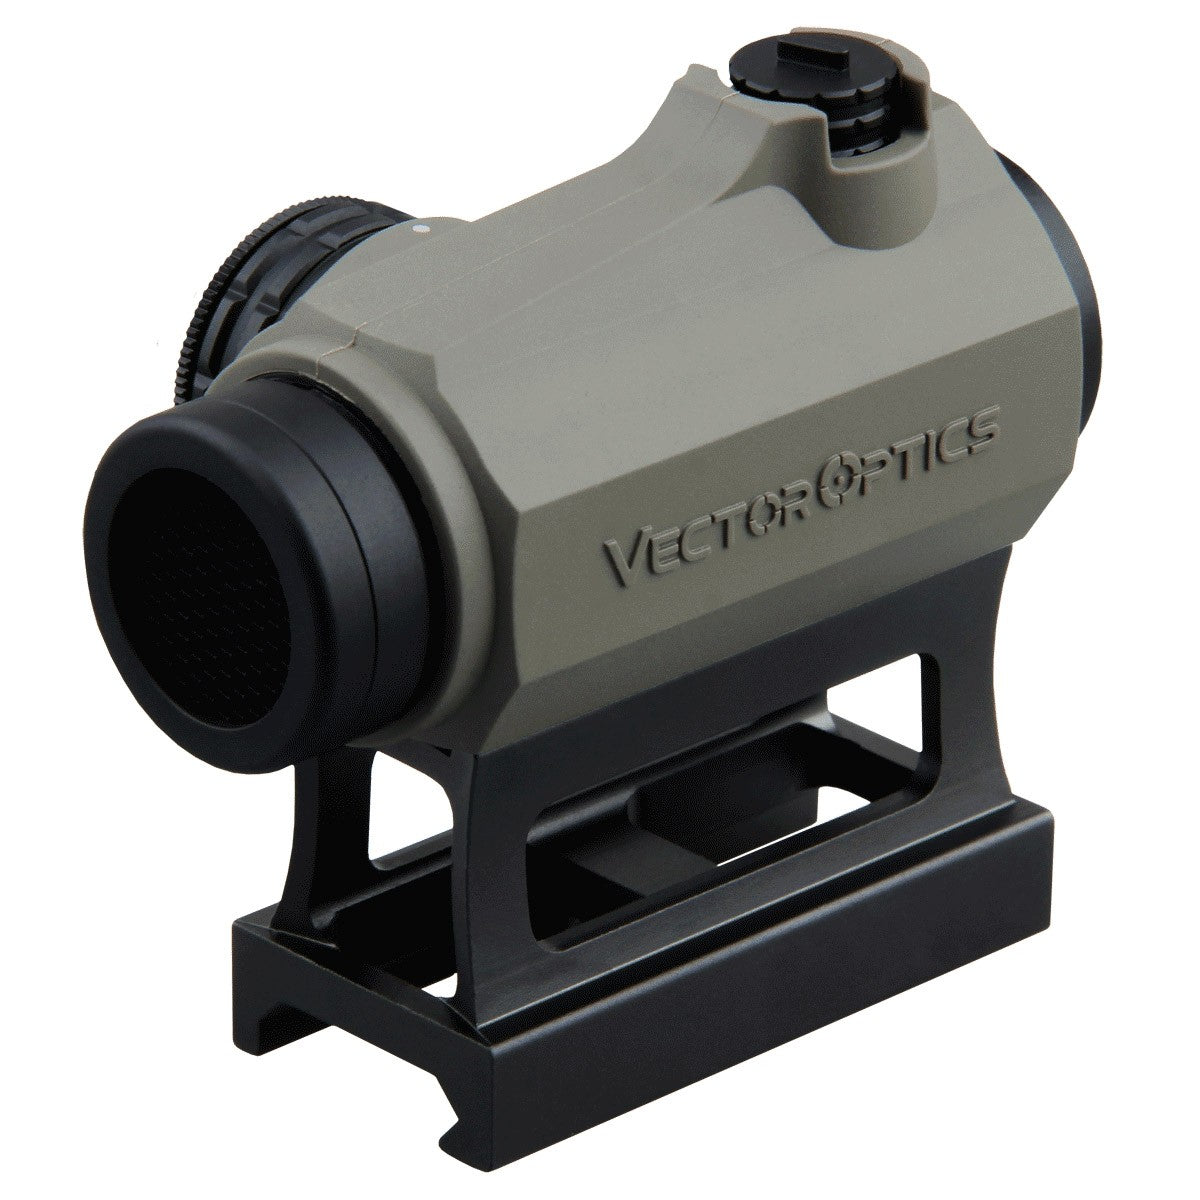 Maverick III - Vector Optics US Online Store